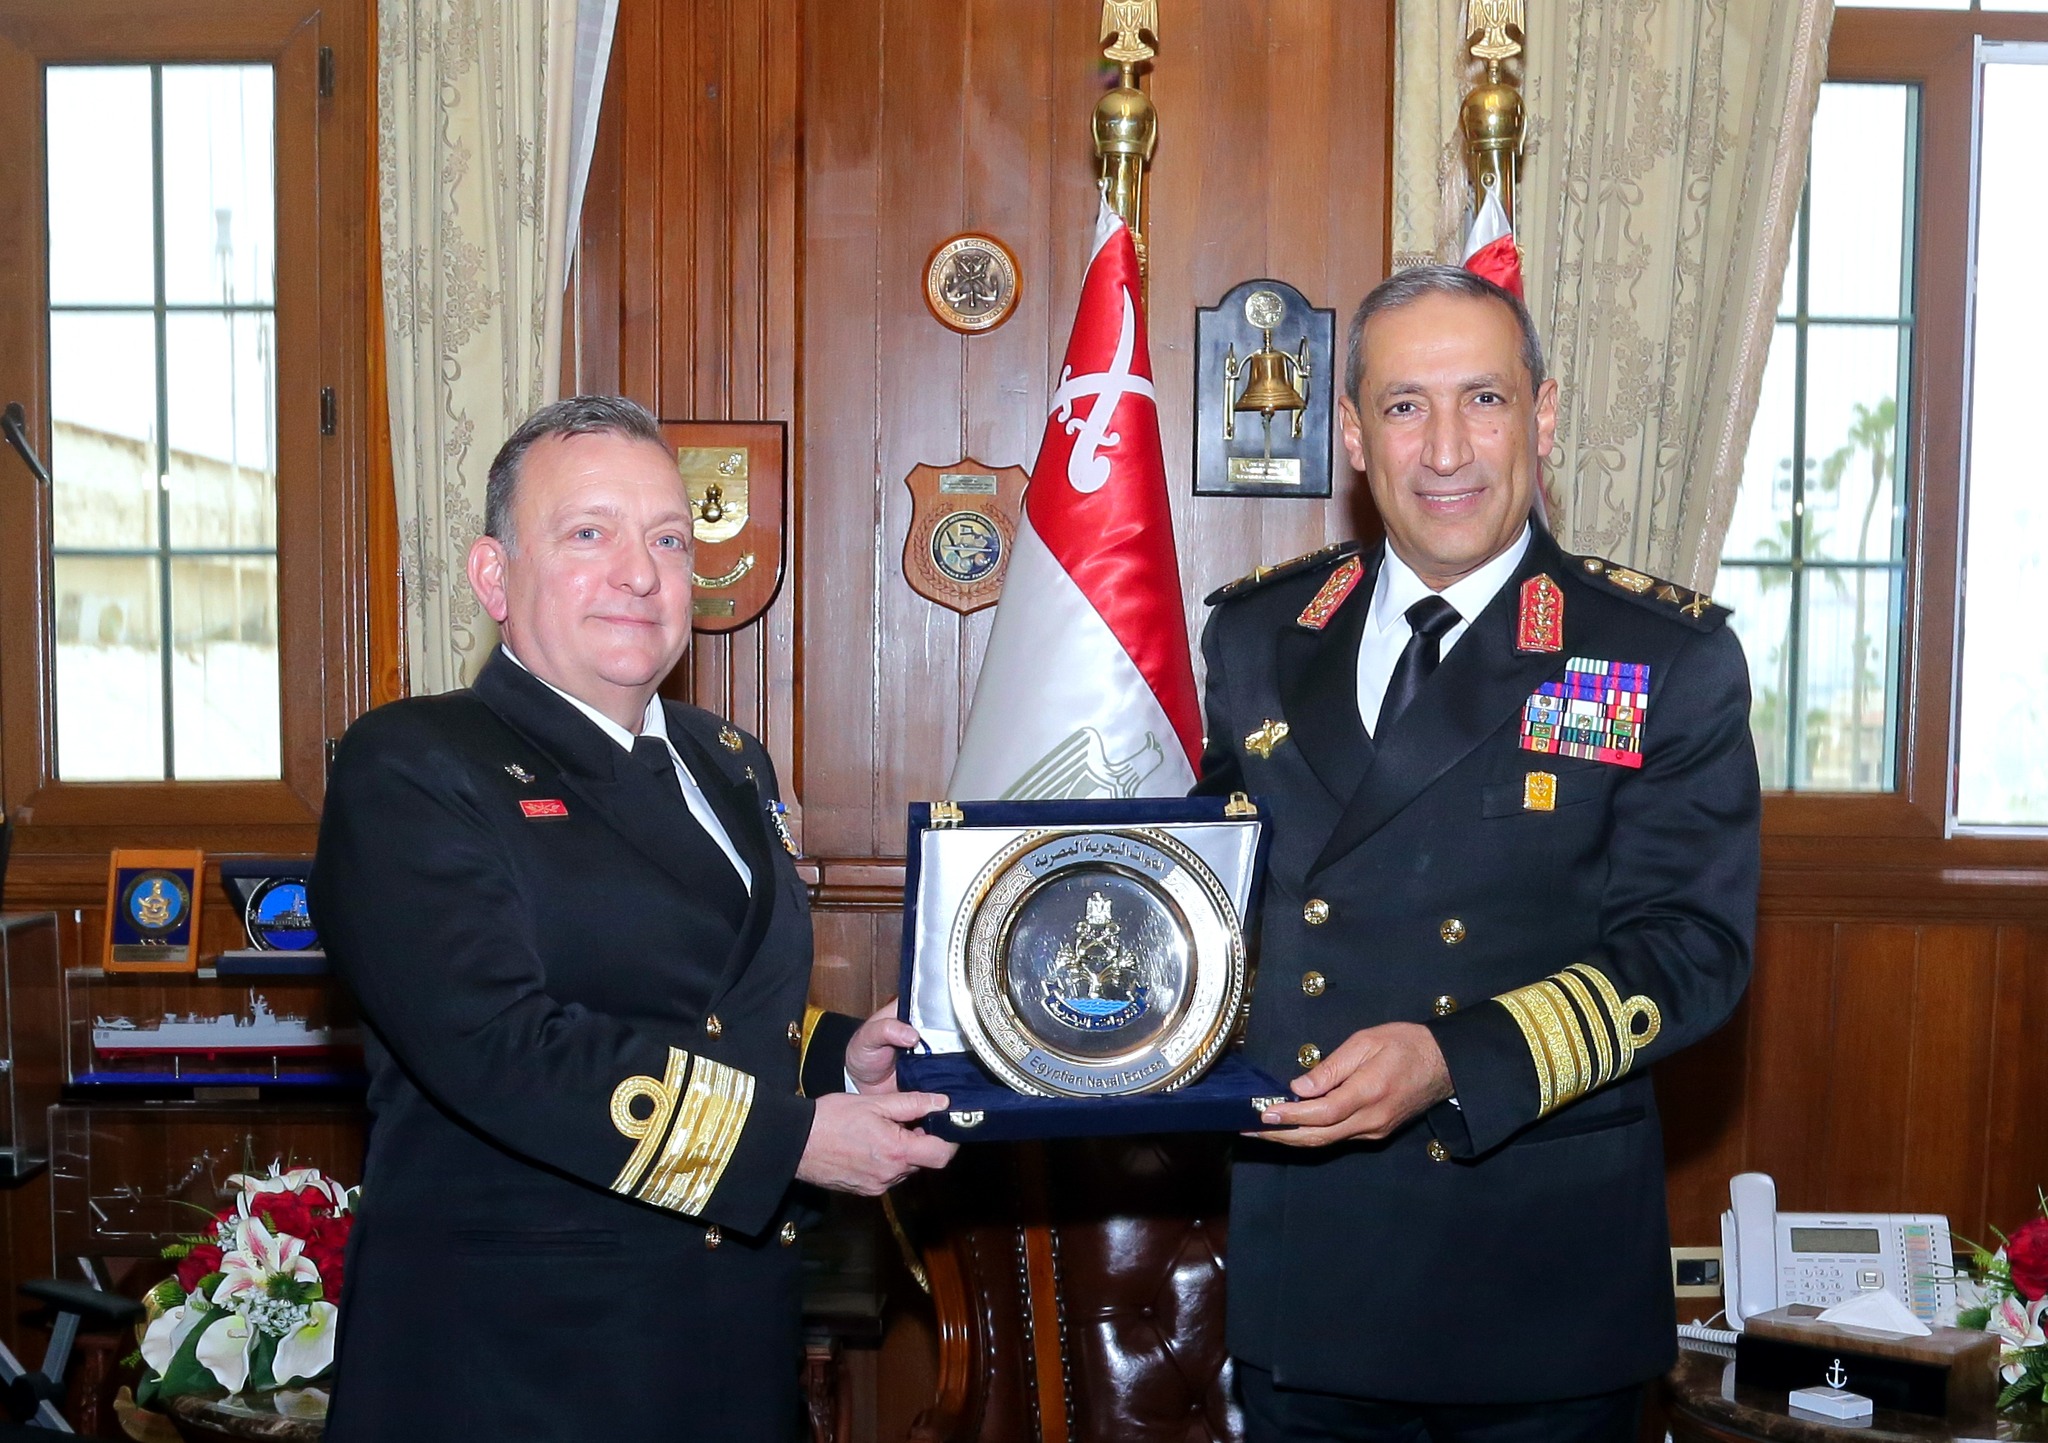 قائد القوات البحرية يلتقى قائد العملية البحرية الأوروبية بالبحر الأحمر "أسبيدس" - بوابة البلد